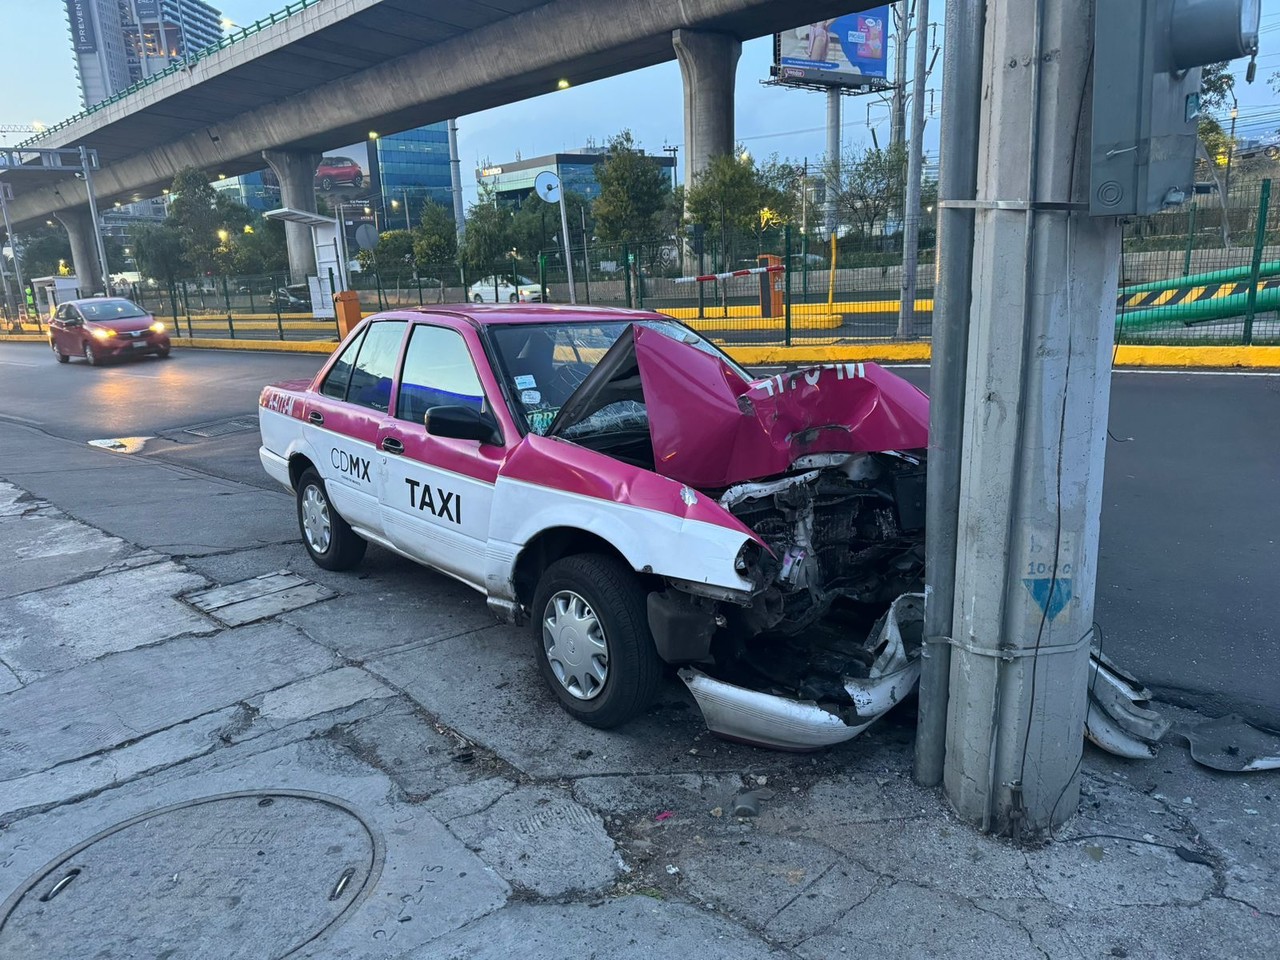 Taxi chocado abandonado. Foto: Ramón Ramírez